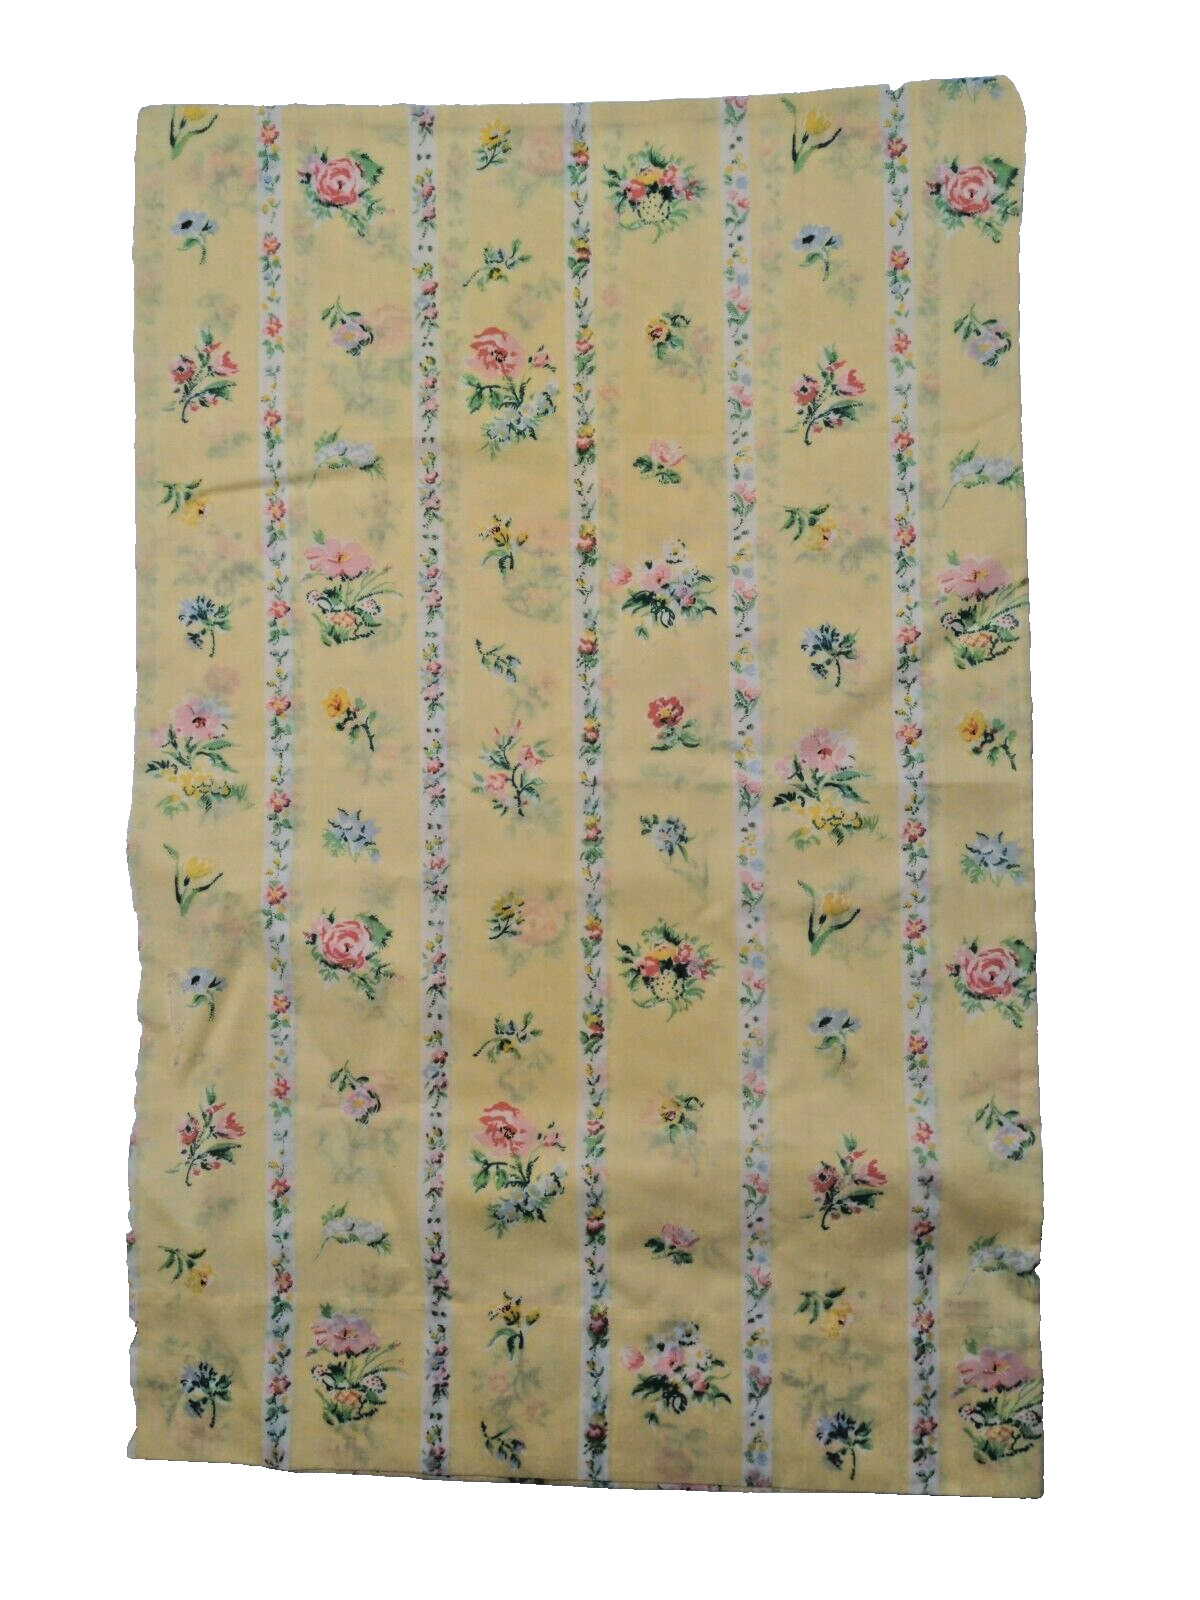 VINTAGE Burlington Lustersoft Queen Yellow Floral Cottagecore Boho Pillowcase